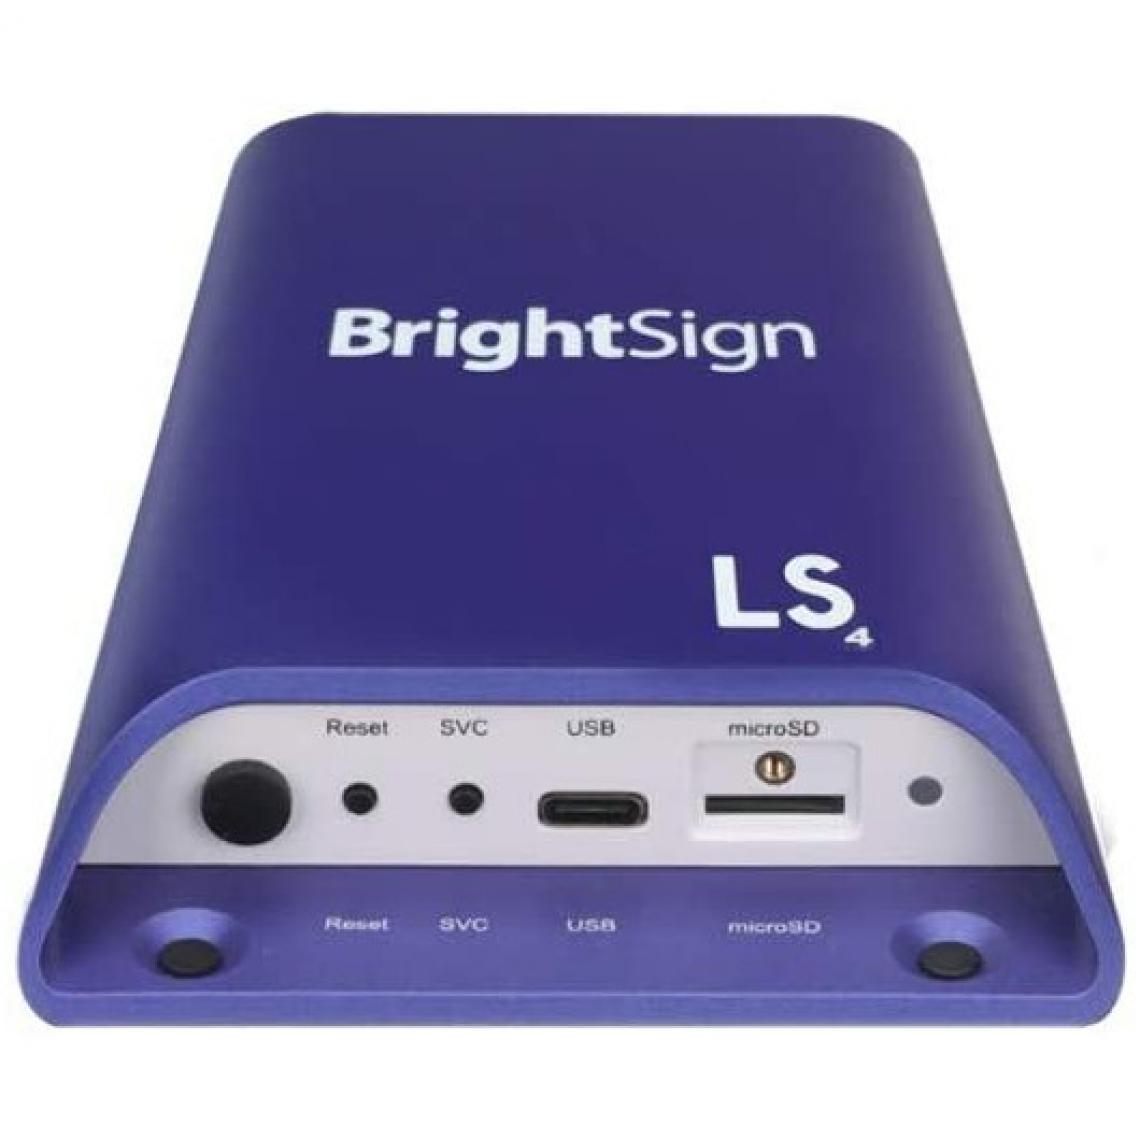 Brightsign - Brightsign LS424, le lecteur HTML 5 - Caméra de surveillance connectée